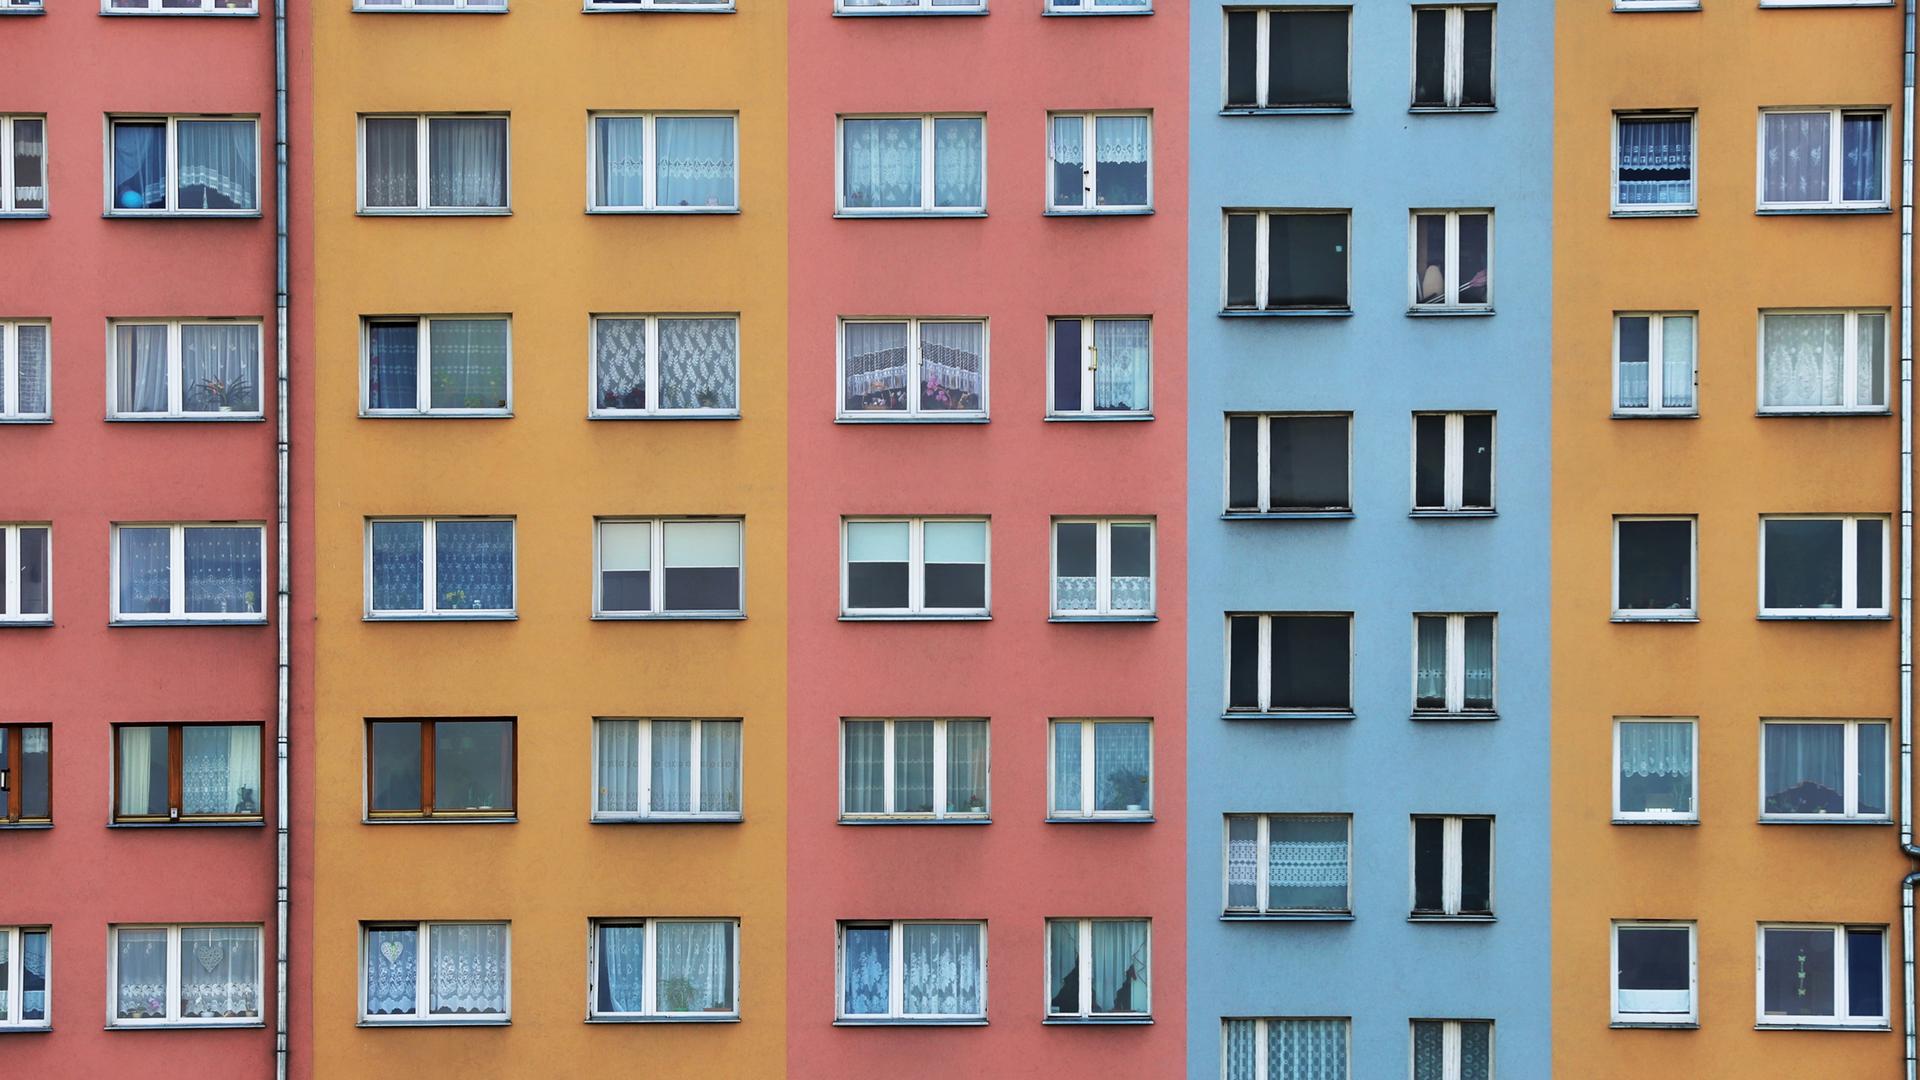 Mehrfarbige Fassade eines Wohnhauses mit zahlreichen Fenstern.